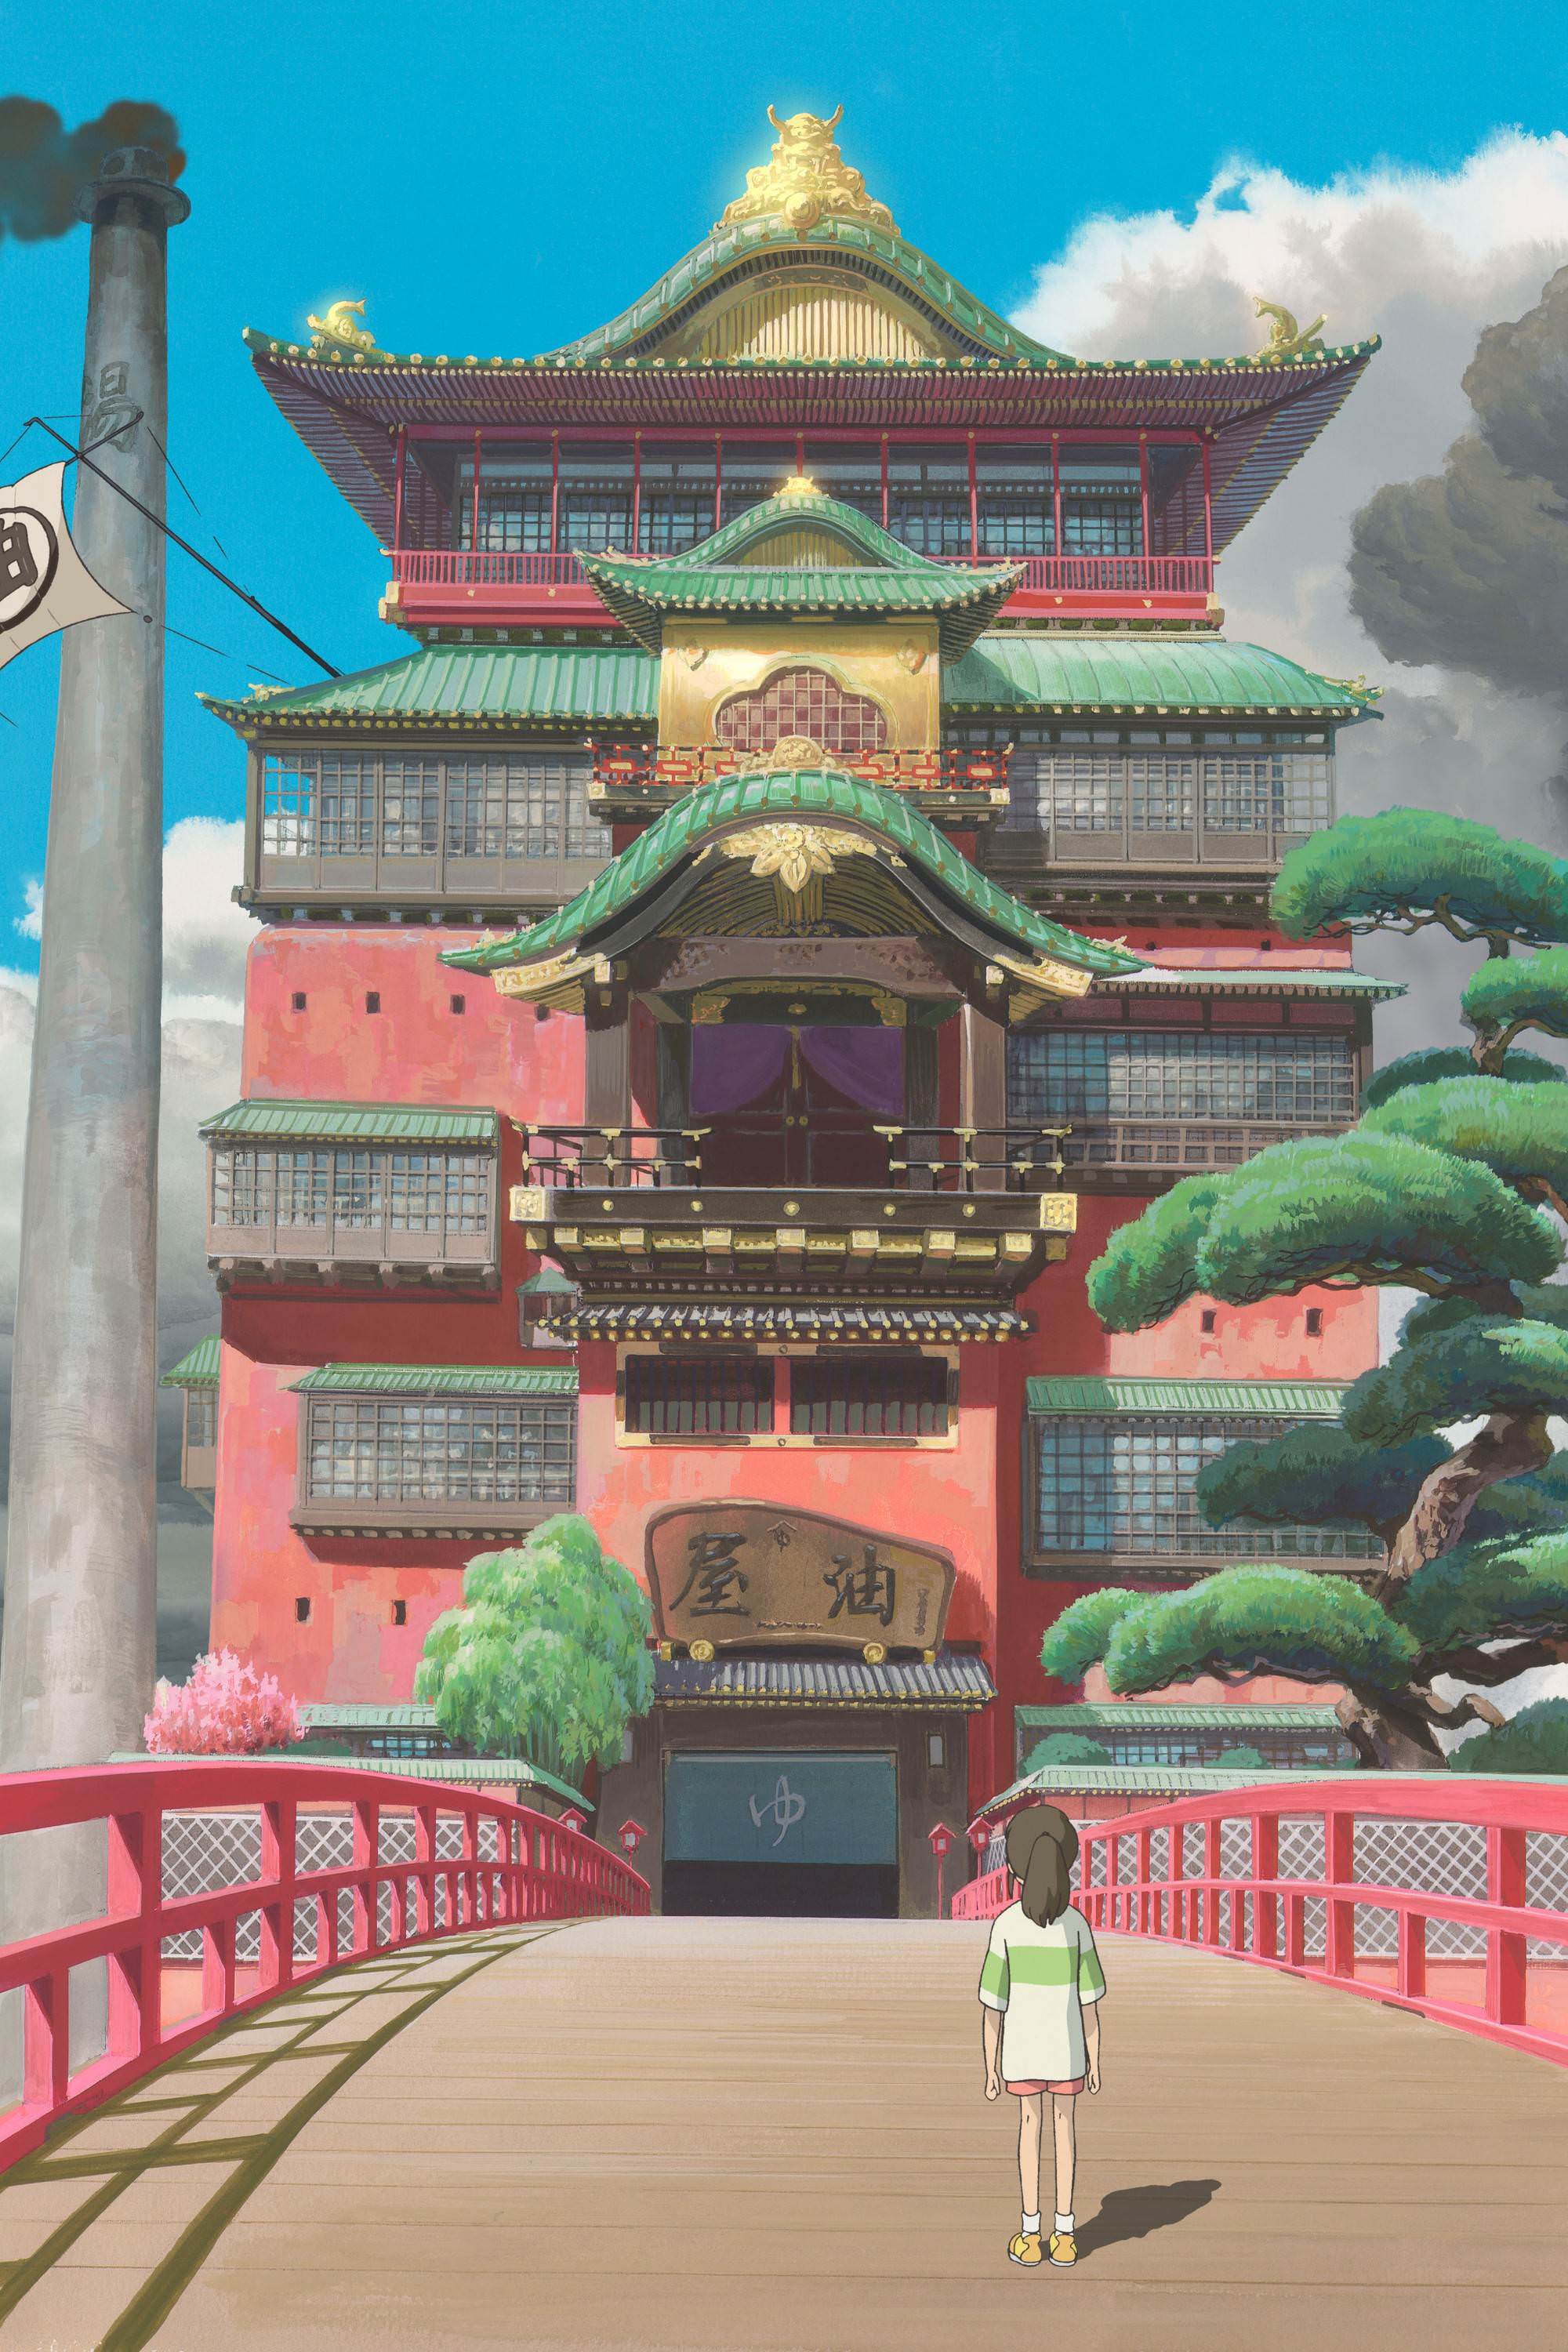 千と千尋の神隠しiphoneの壁紙 中国の建築 日本の建築 パゴダ 神社 建築 Wallpaperuse